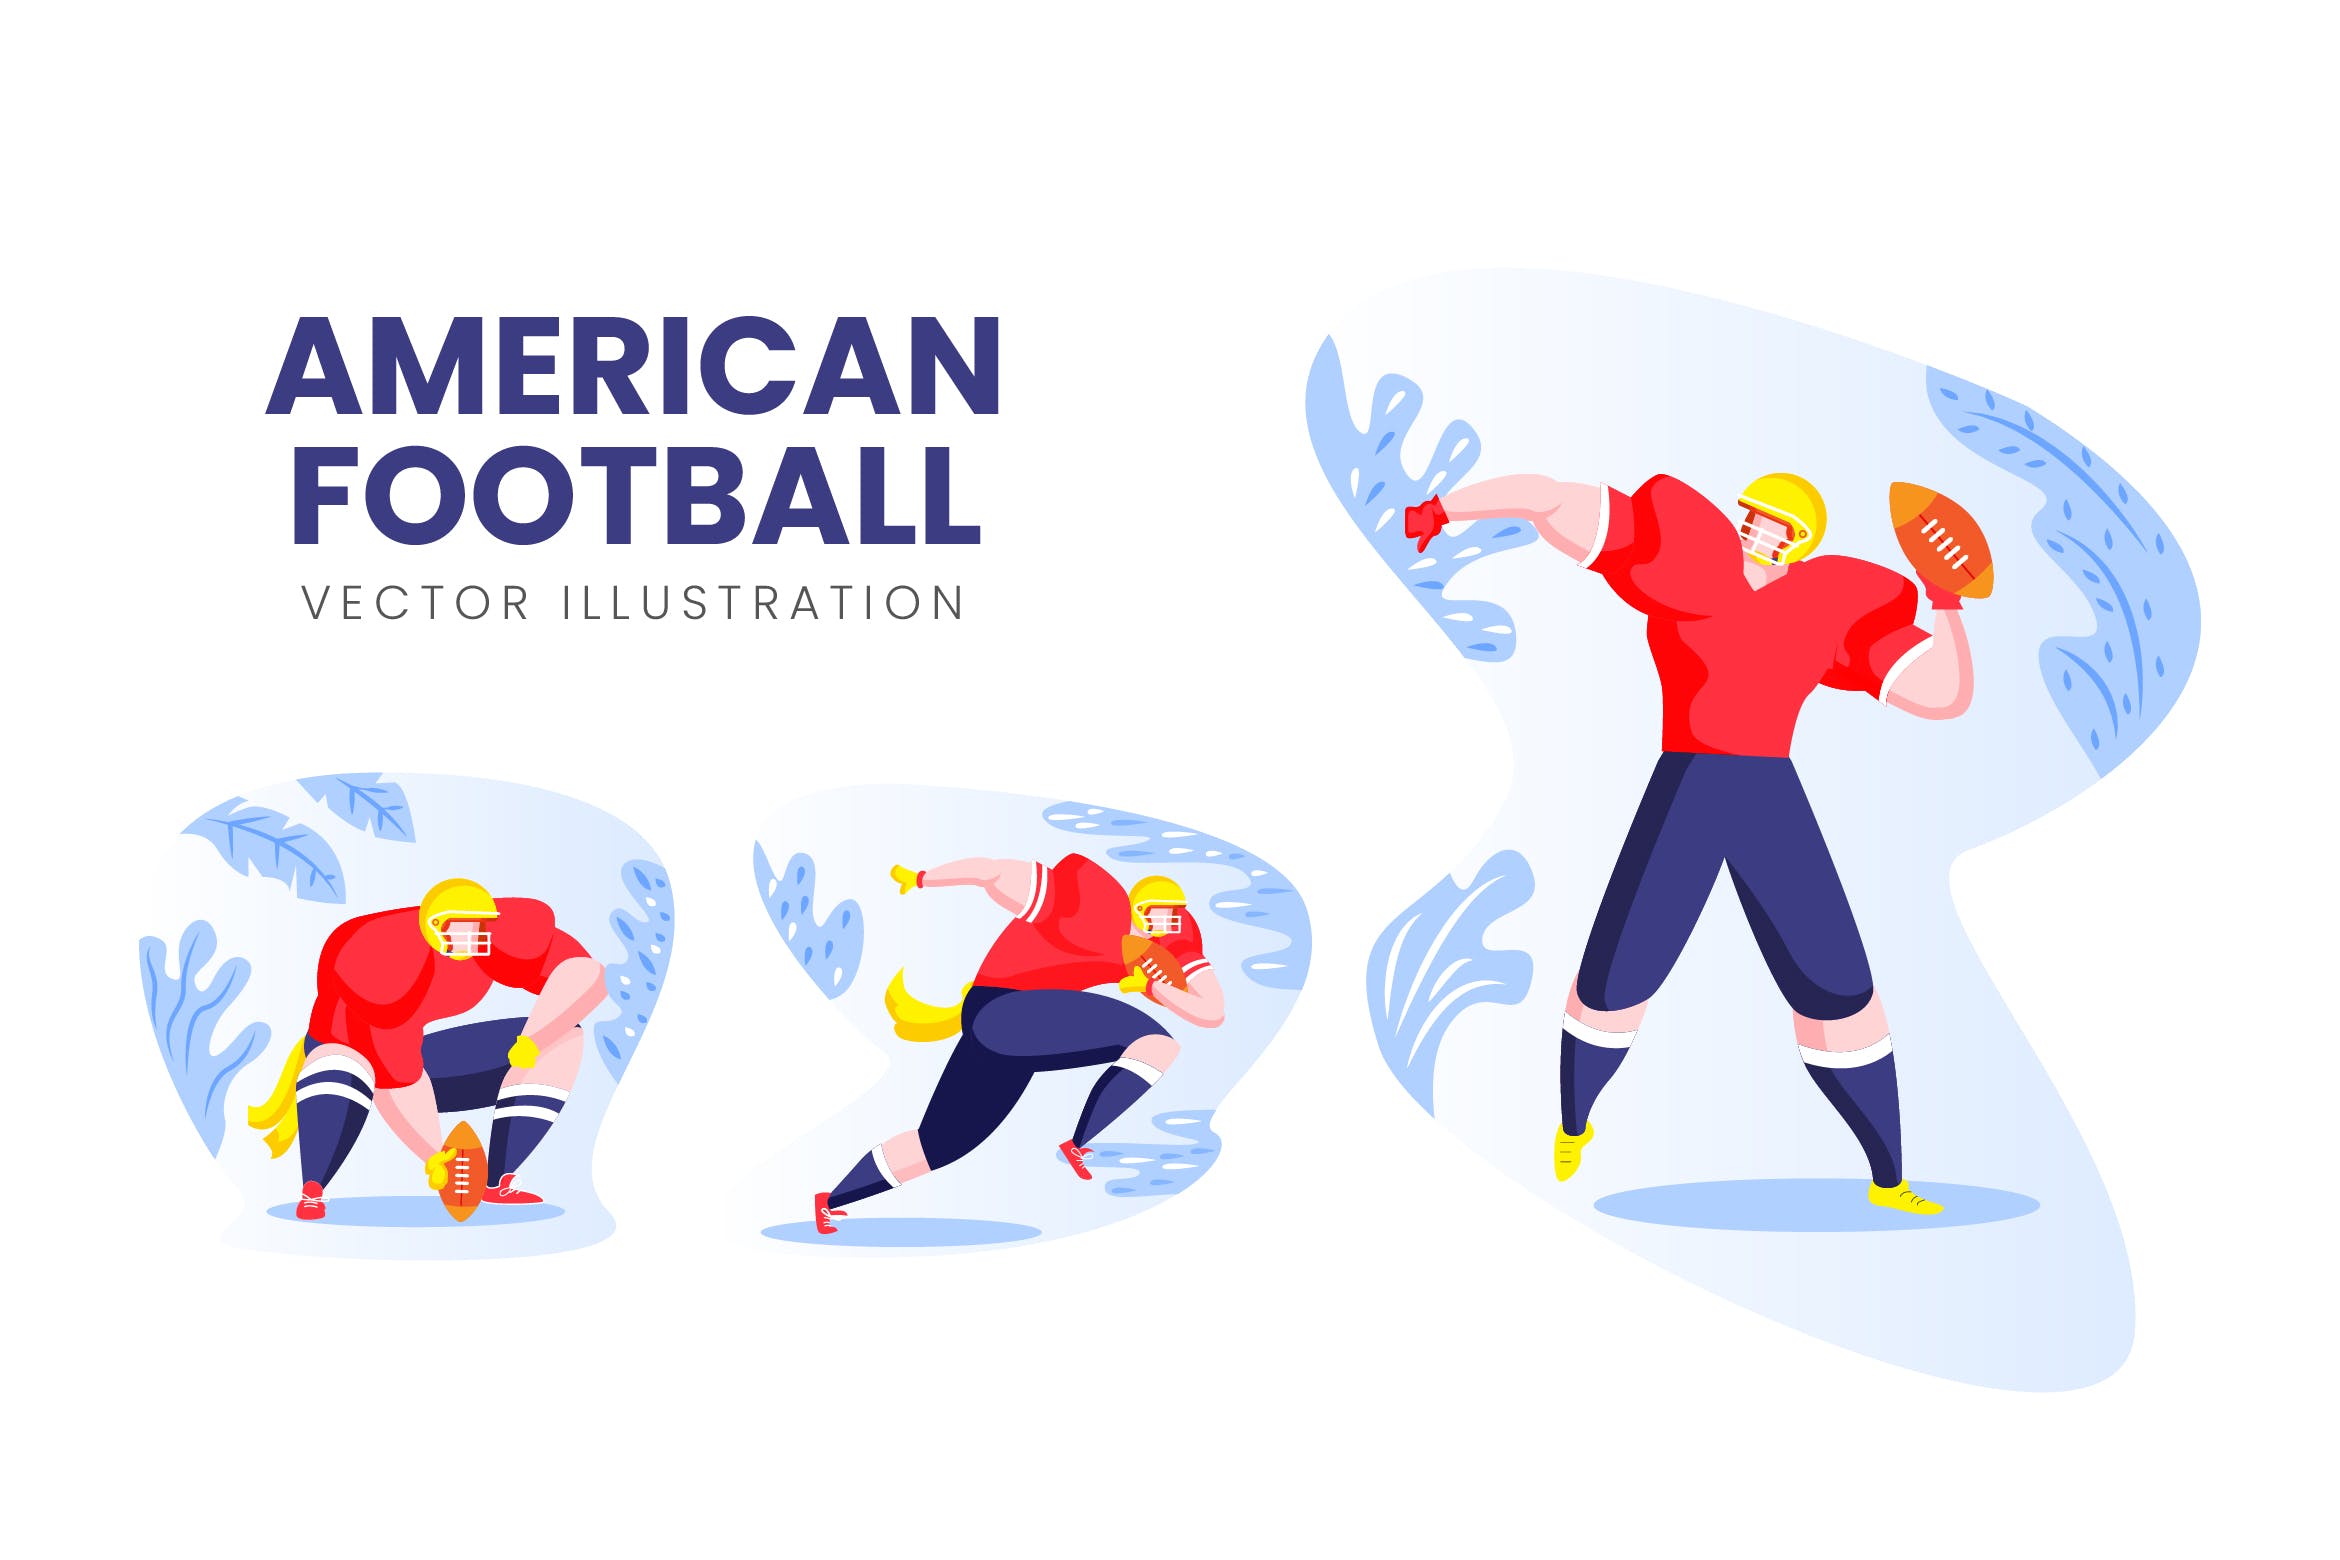 美式足球运动员人物形象素材库精选手绘插画矢量素材 American Football Vector Character Set插图